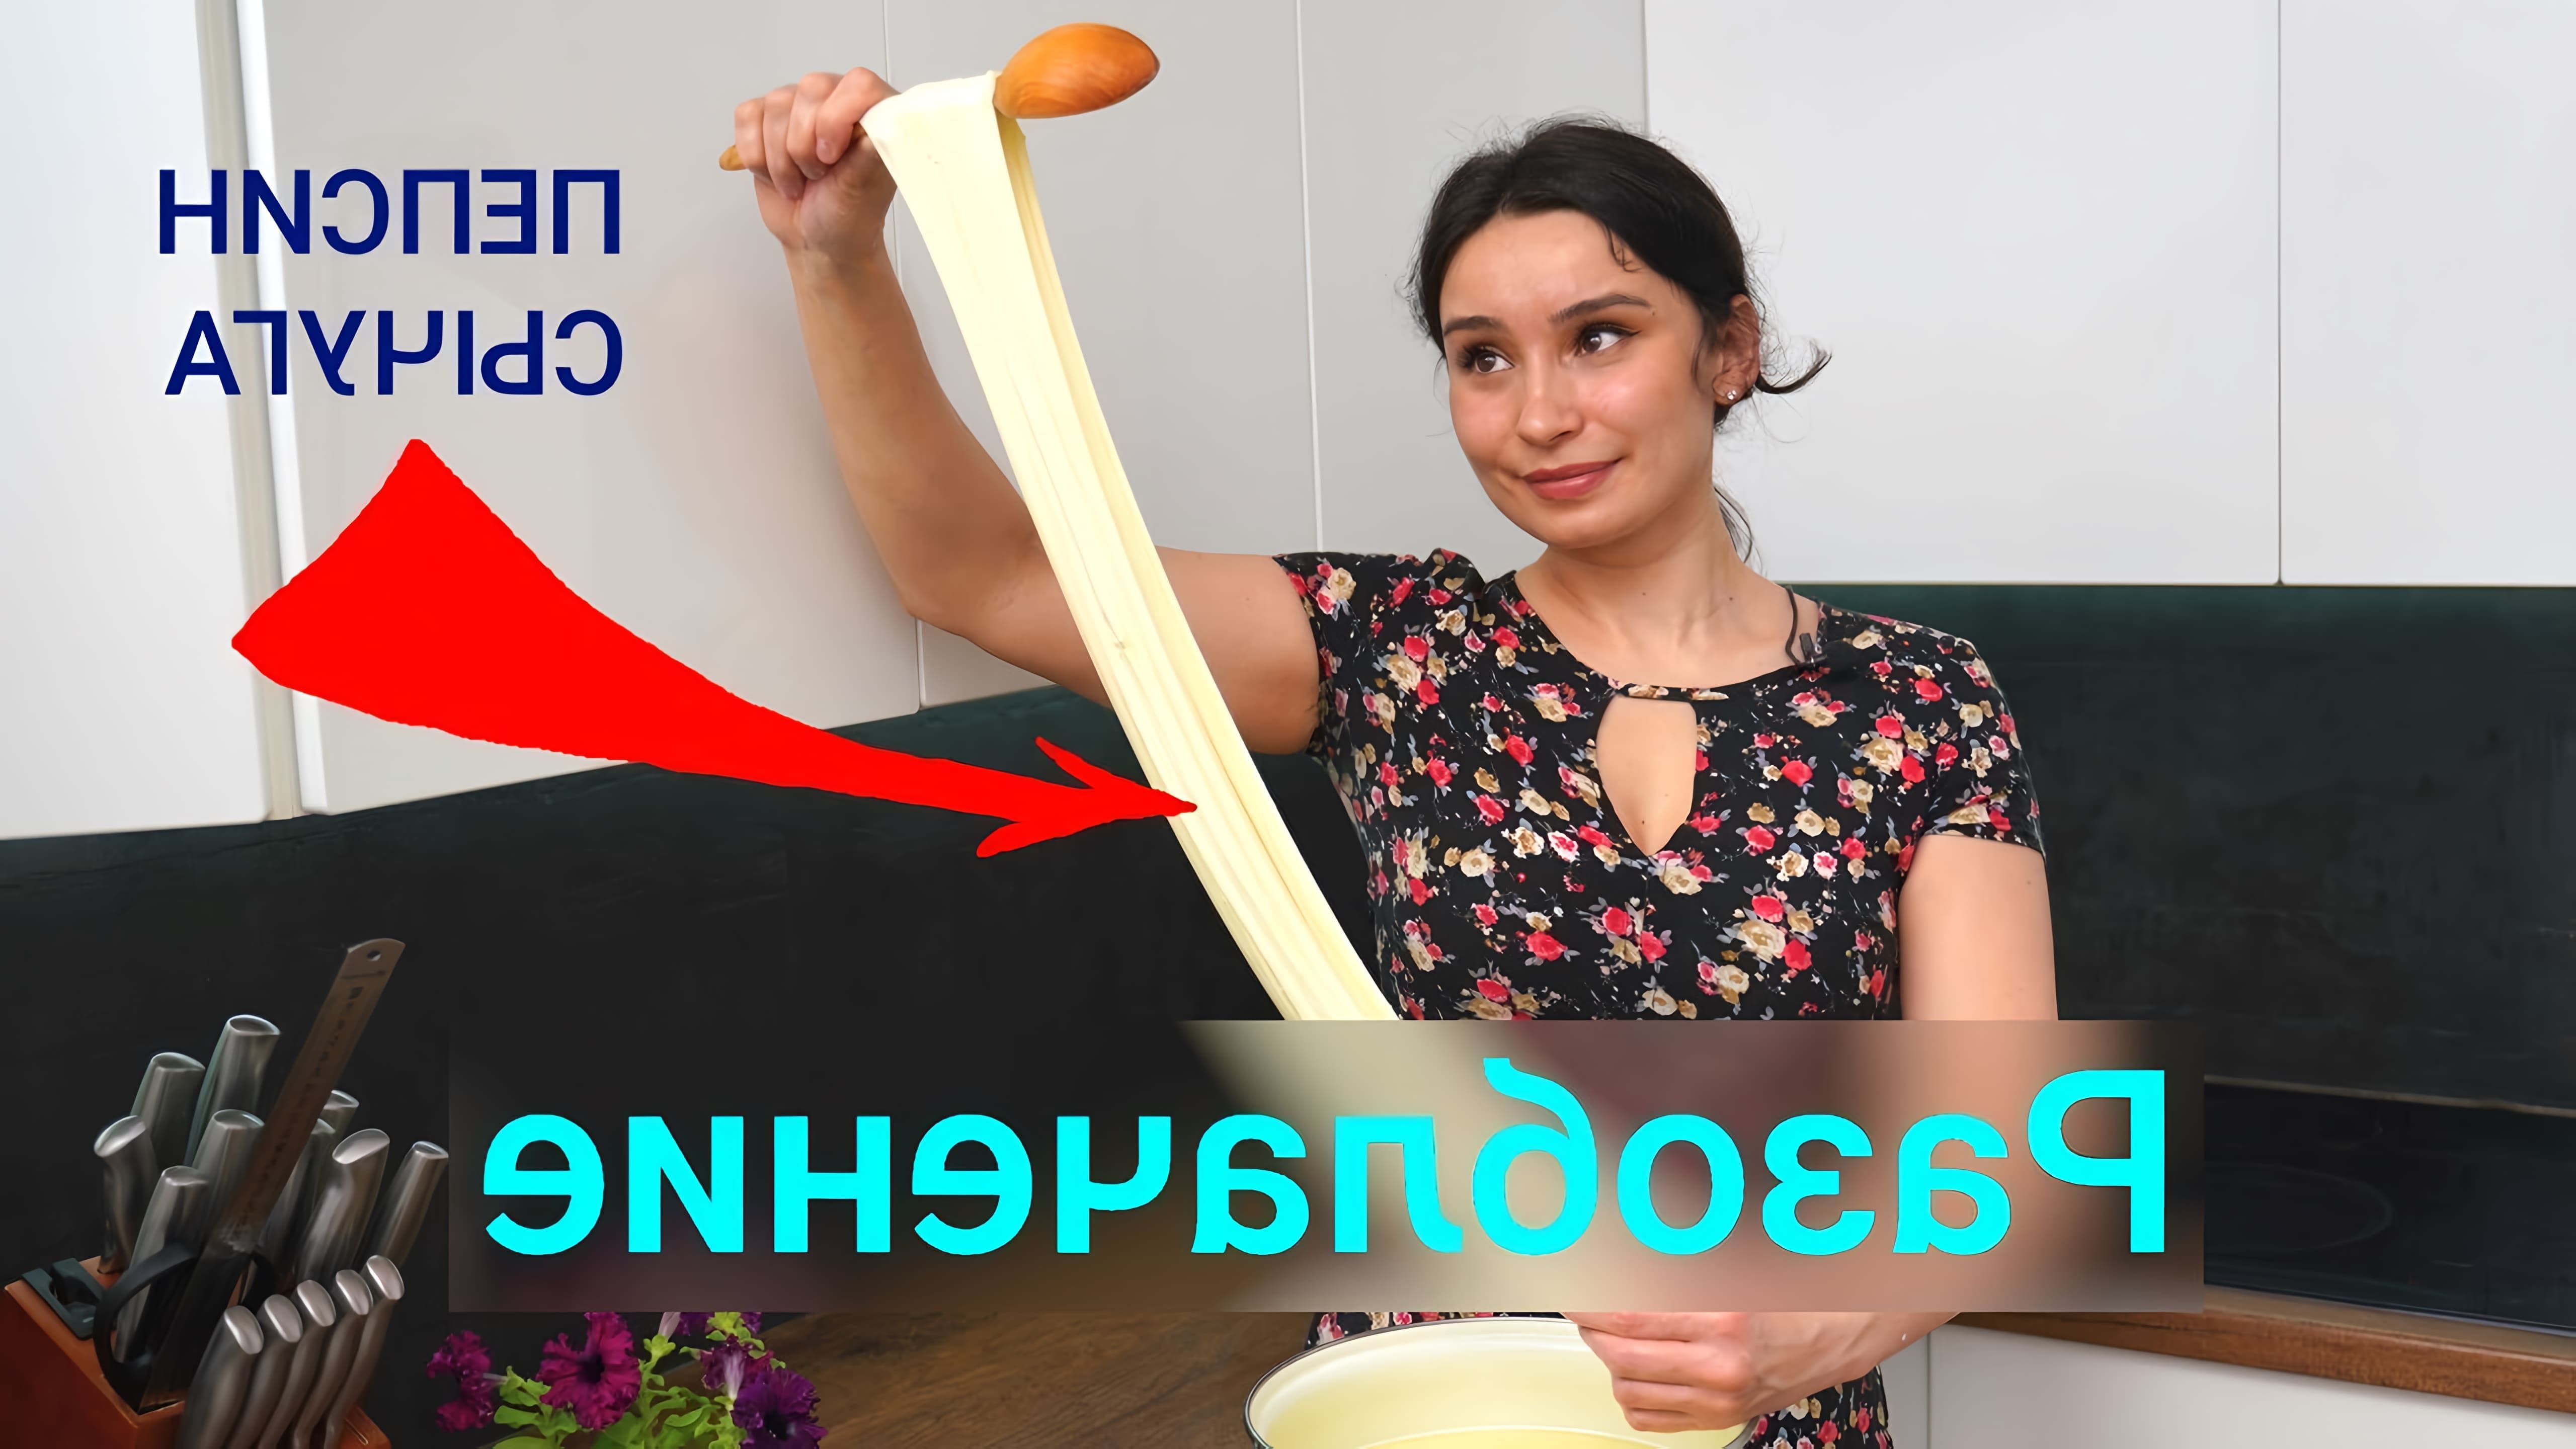 Видео как приготовить моцареллу дома, используя только два ингредиента - молоко и кислоту, такую как уксус